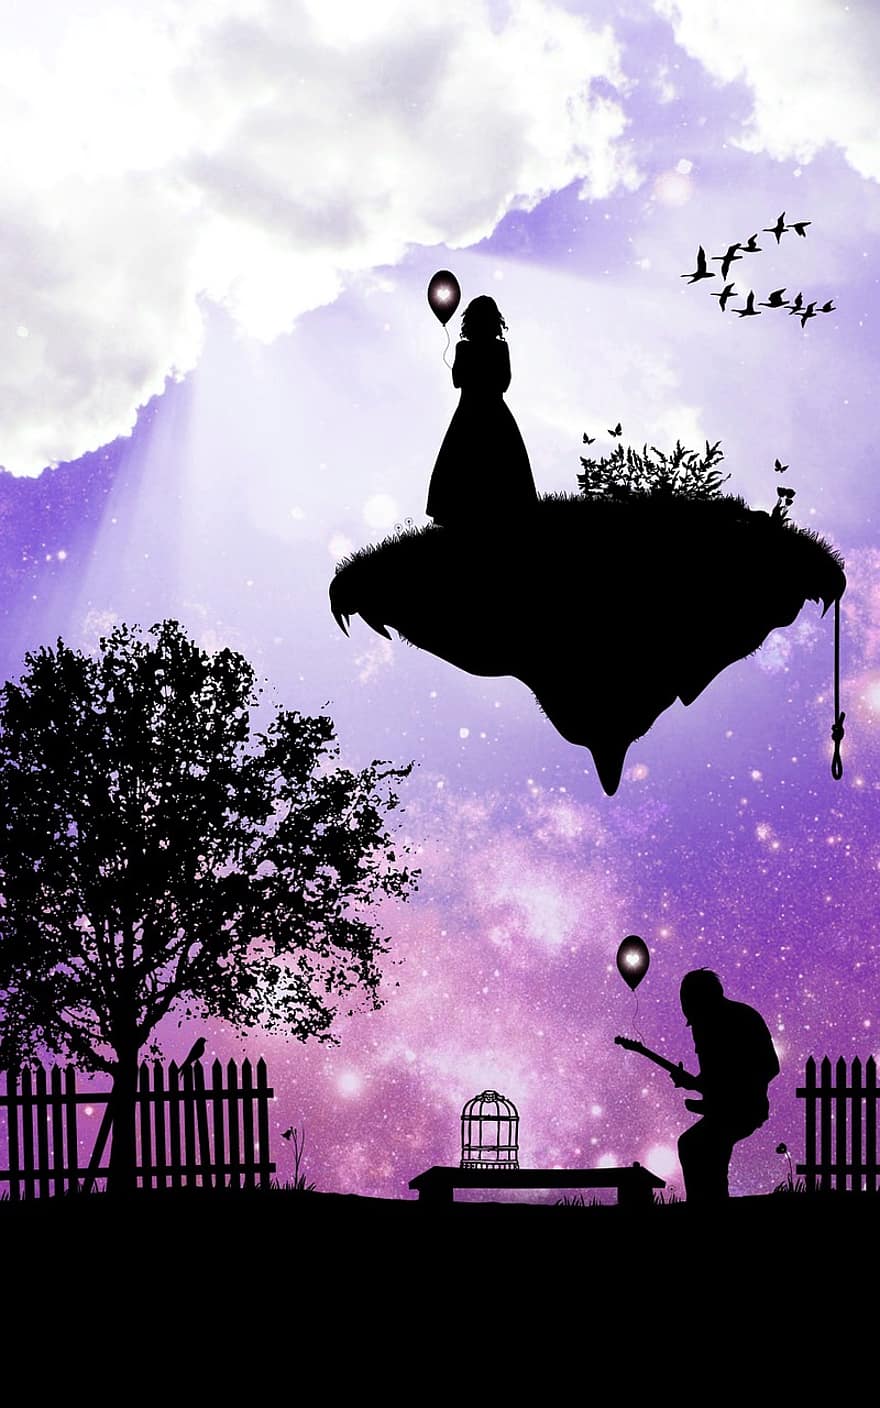 женщина, человек, птицы, звездное небо, изображение на заднем плане, история, дерево, забор, банка, клетка для птиц, облака